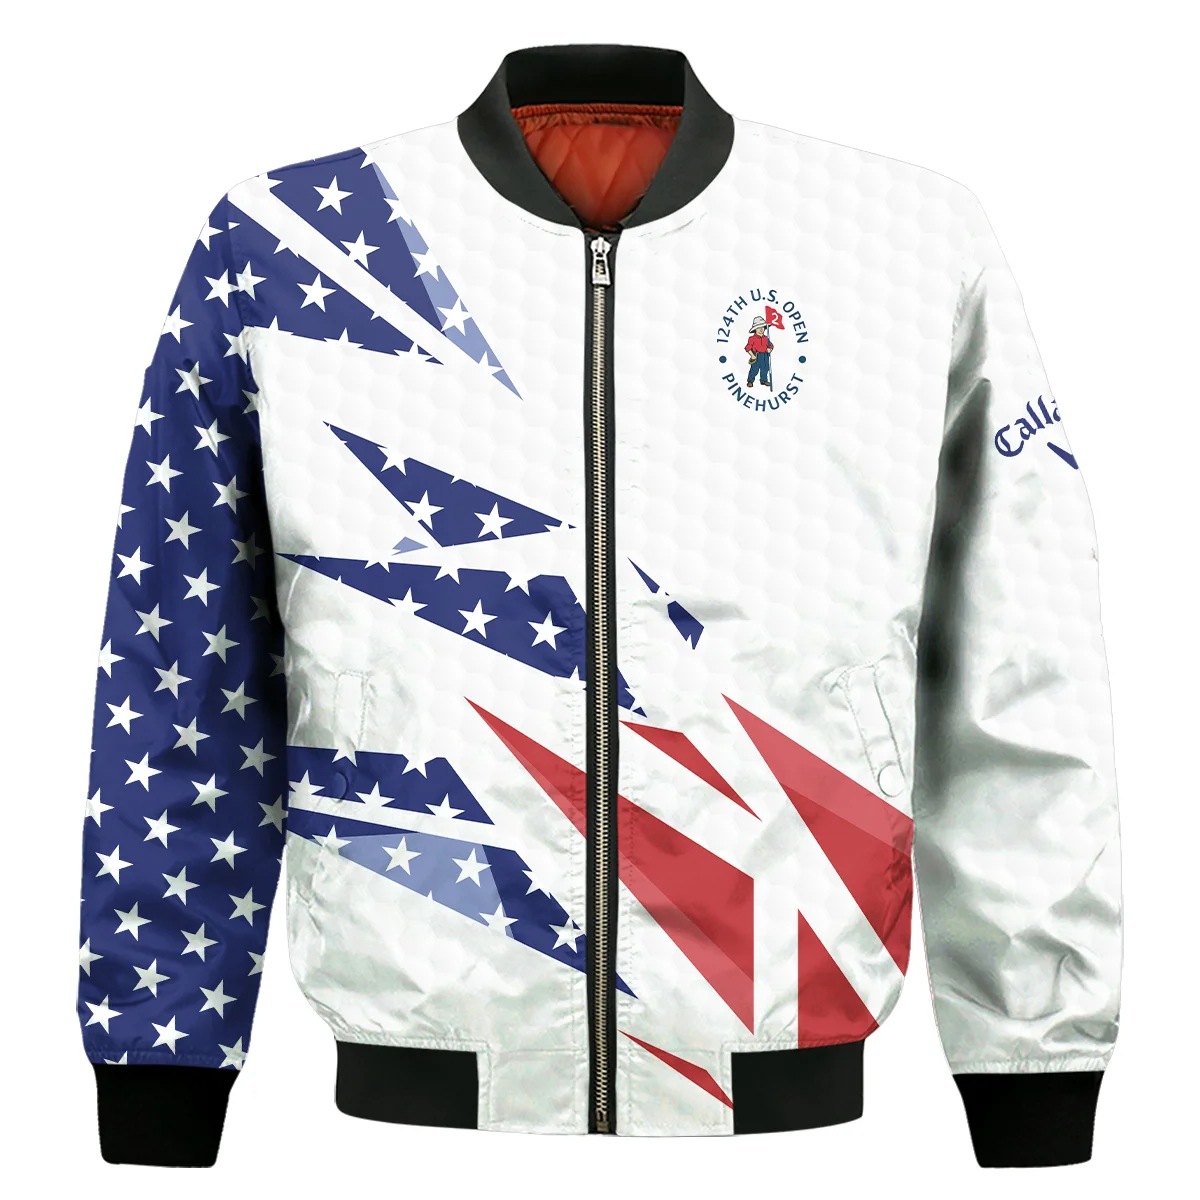 124th U.S. Open Pinehurst Callaway Bomber Jacket Golf Pattern White USA Flag All Over Print Bomber Jacket